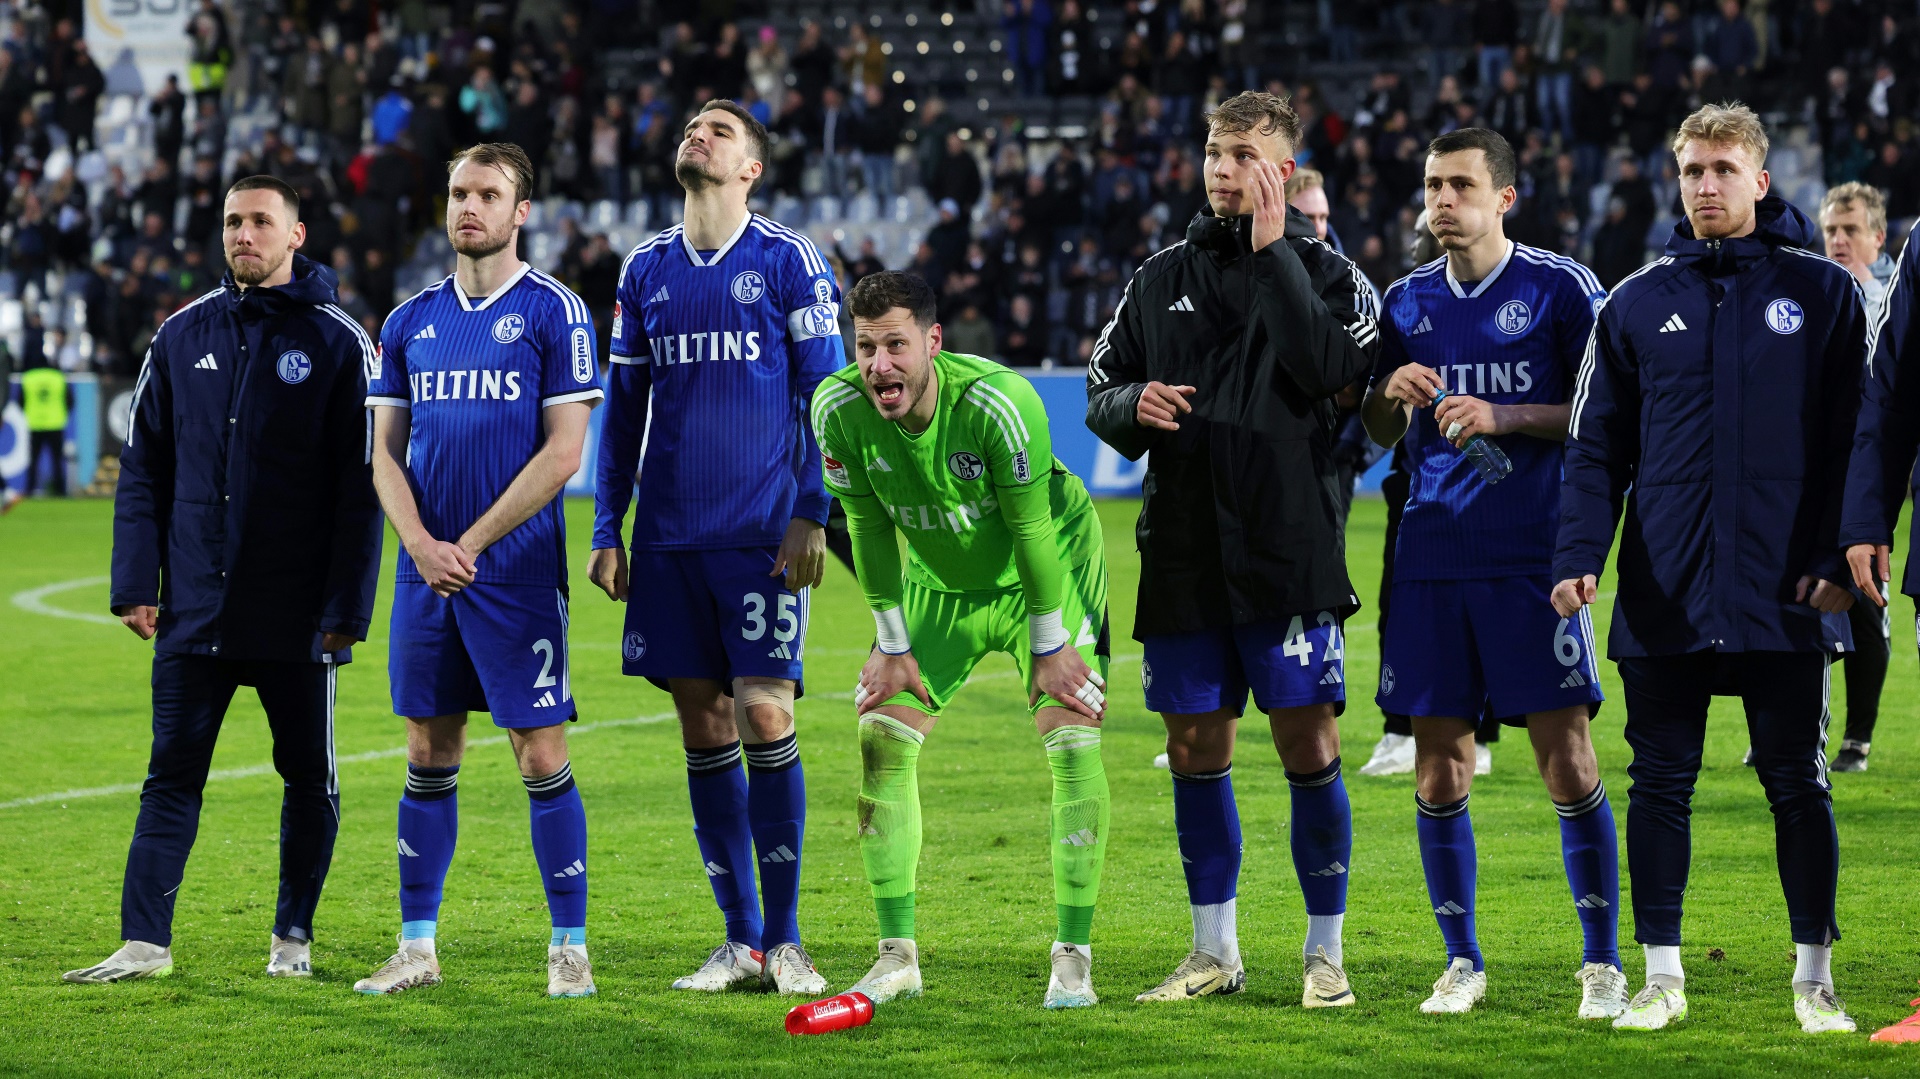 Wieder kein Auswärtssieg für Schalke - Nürnberg patzt erneut